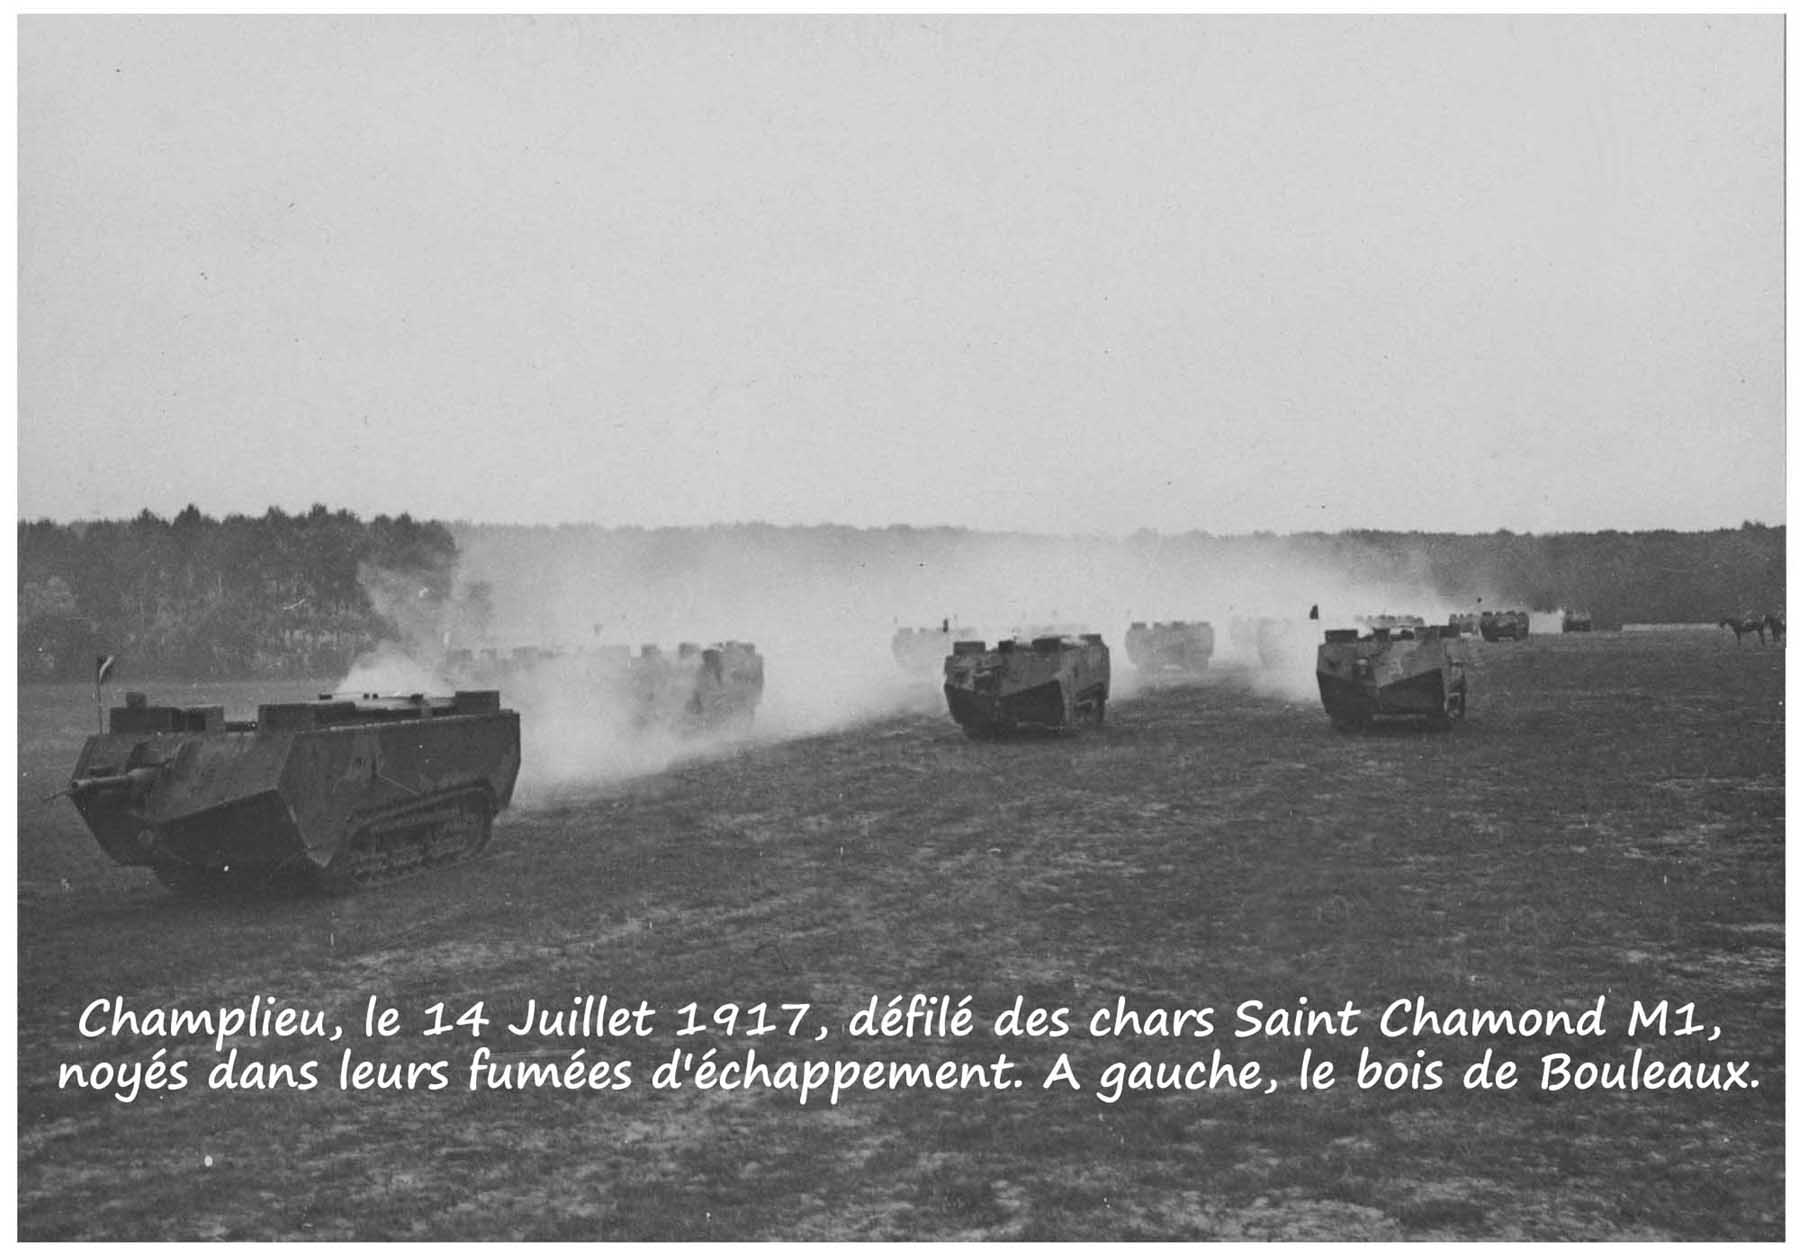 11 - Champlieu - 14 Juillet 1917 (01a).jpg